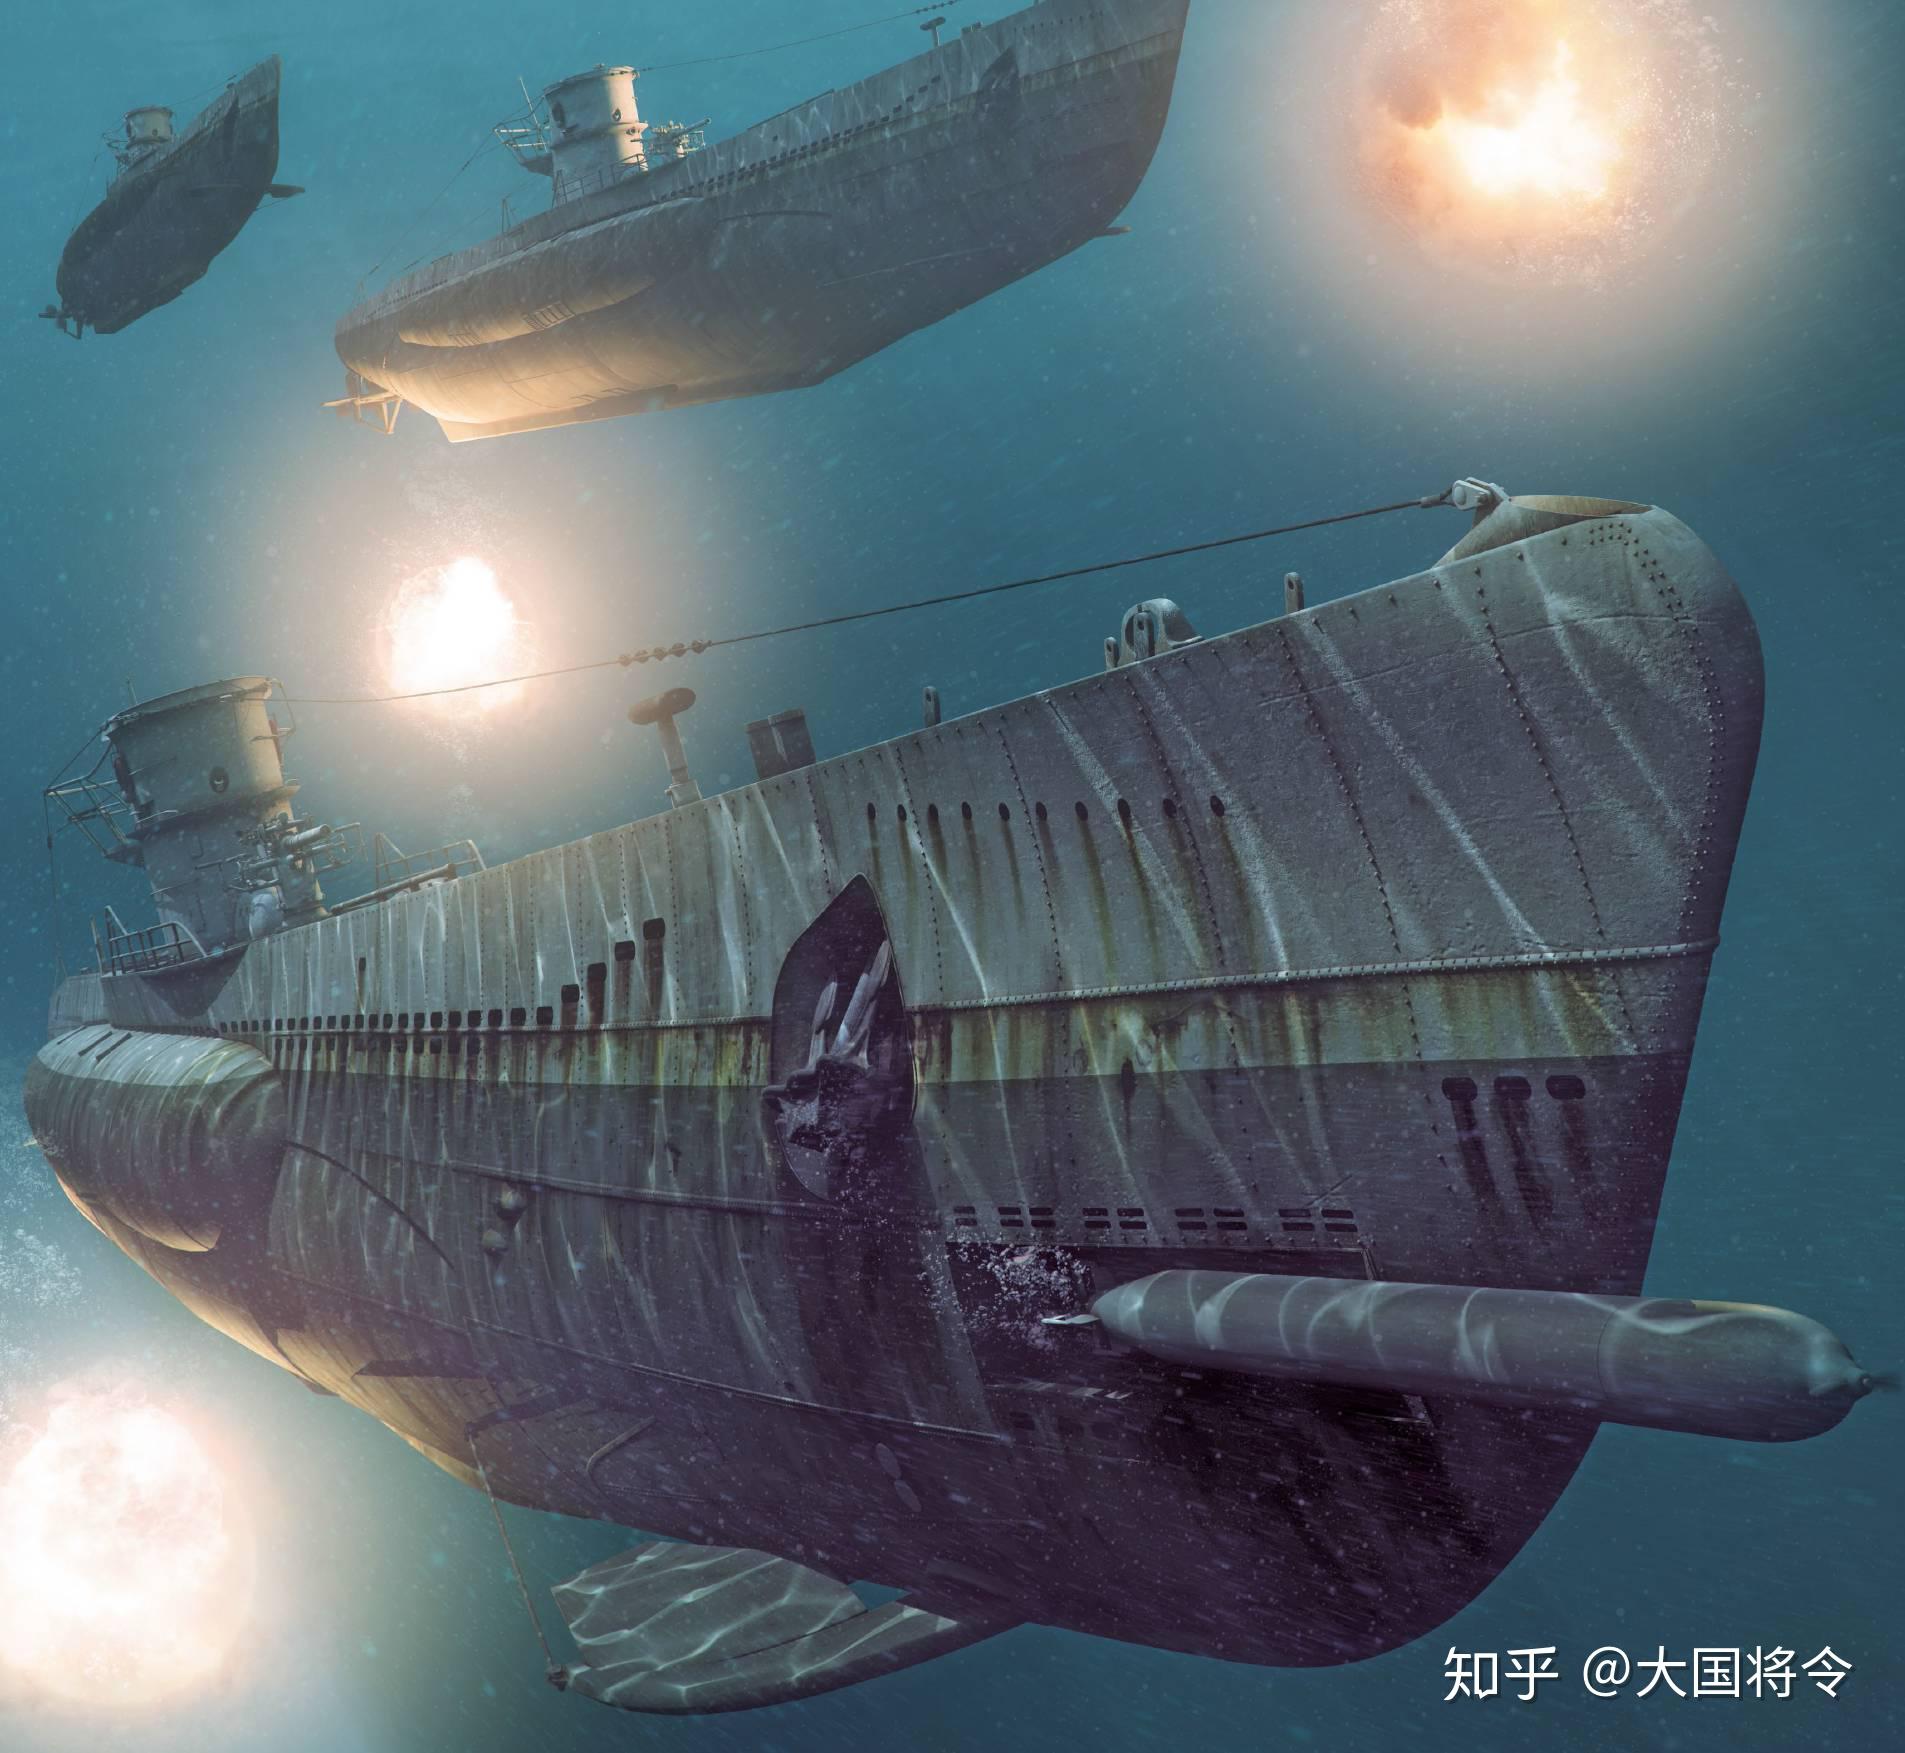 帝国末日的深海电狼二战德国uxxi型潜艇领先世界30年